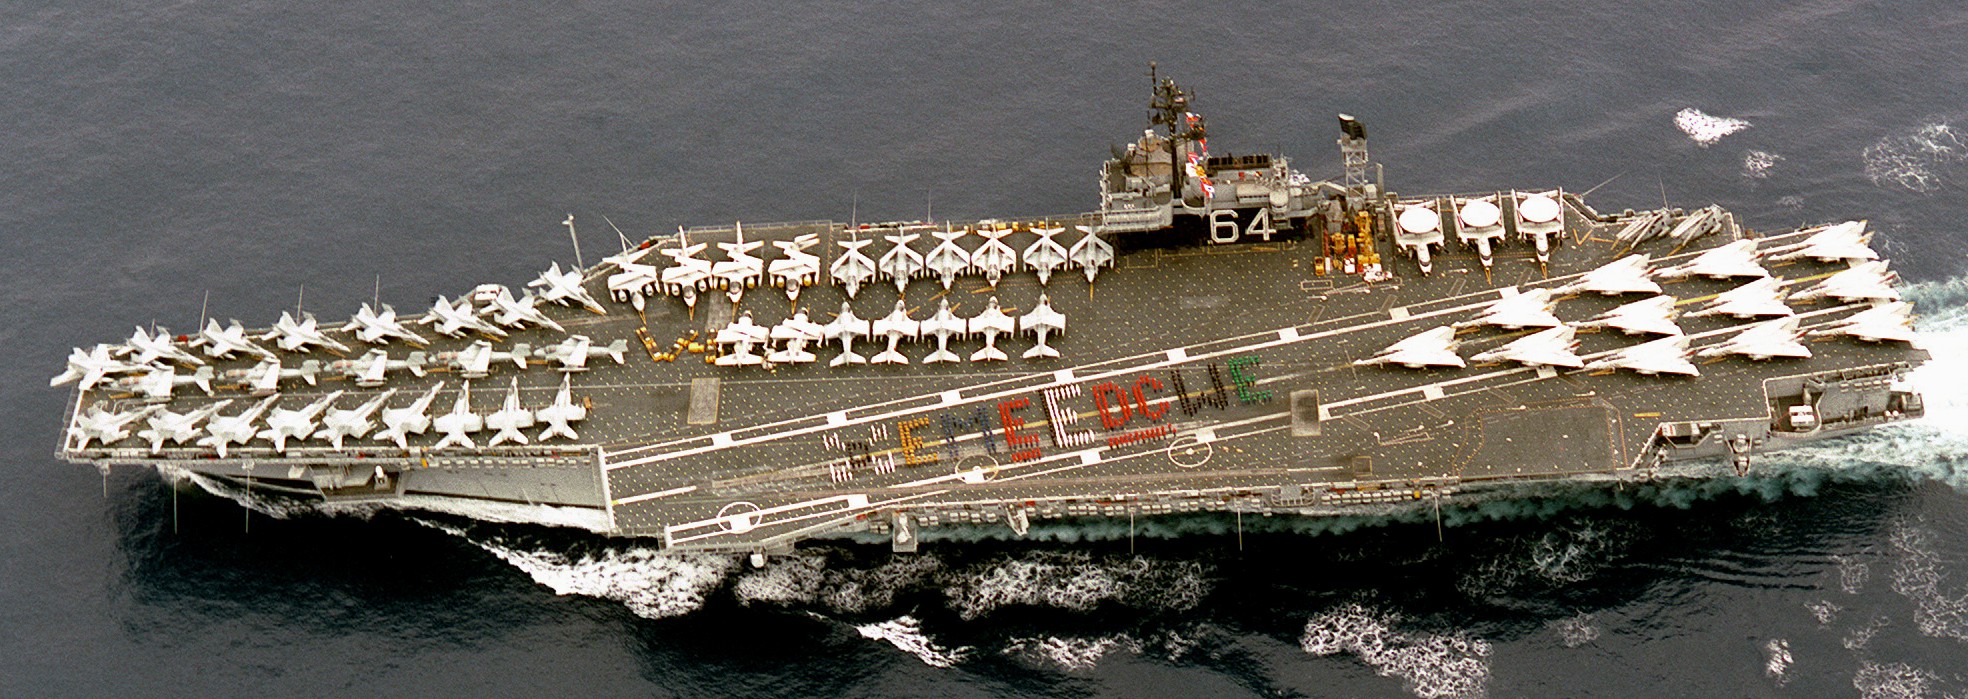 cv-64 uss constellation kitty hawk class aircraft carrier air wing cvw-14 us navy 81